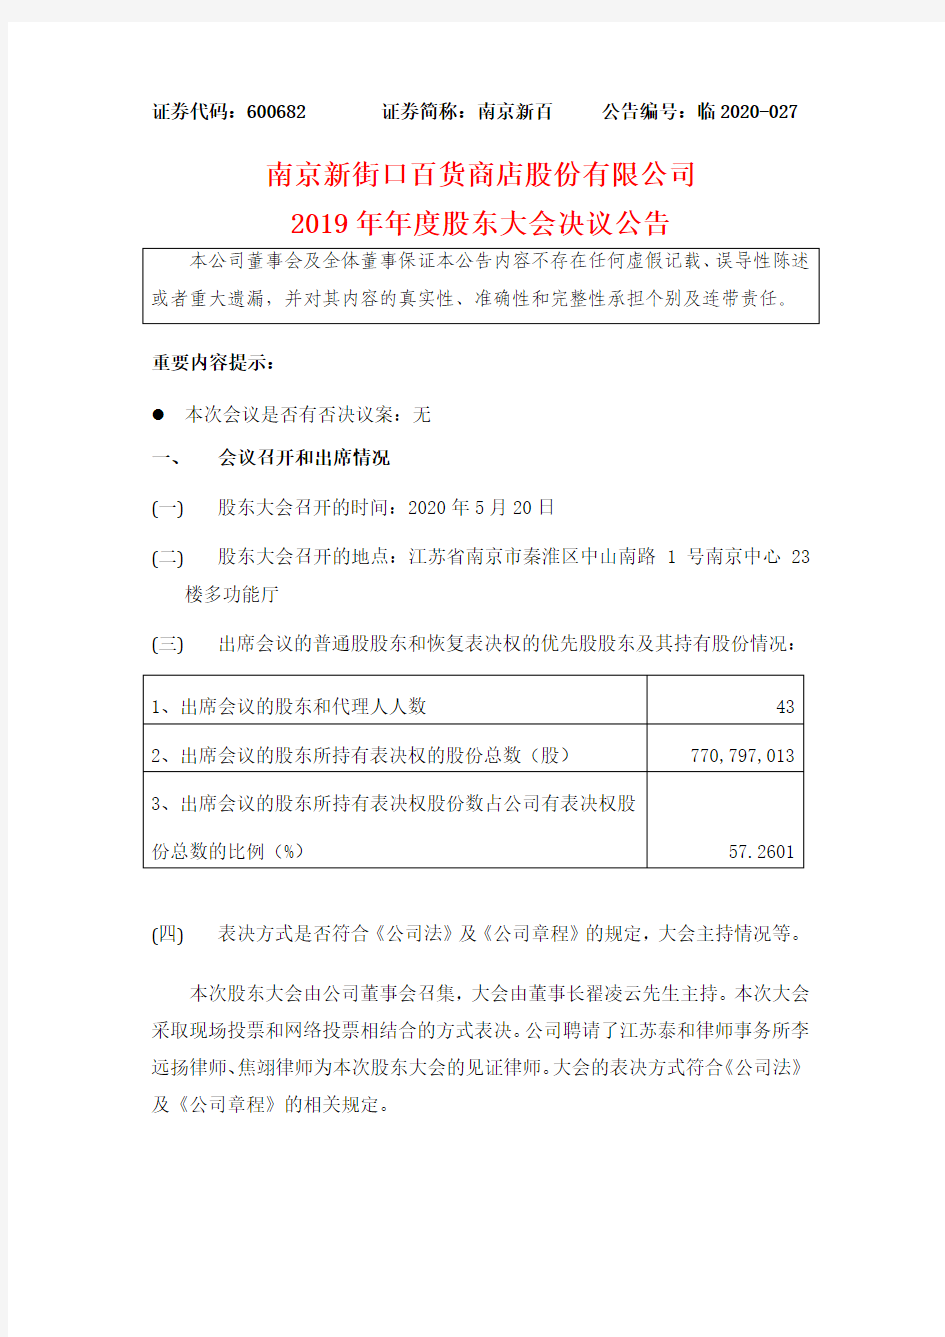 南京新百：2019年年度股东大会决议公告